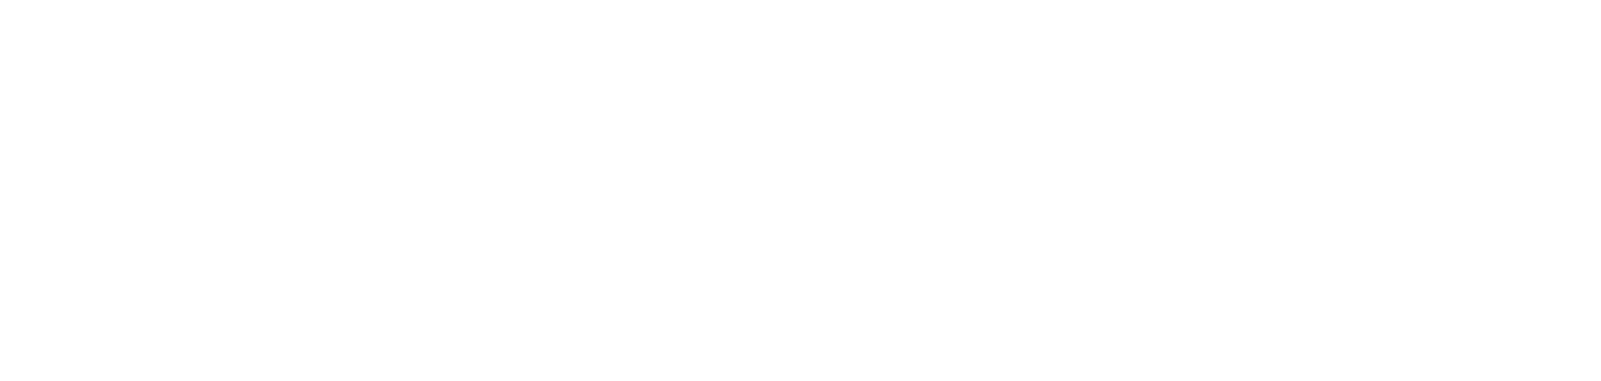 KKR & Co. logo for dark backgrounds (transparent PNG)